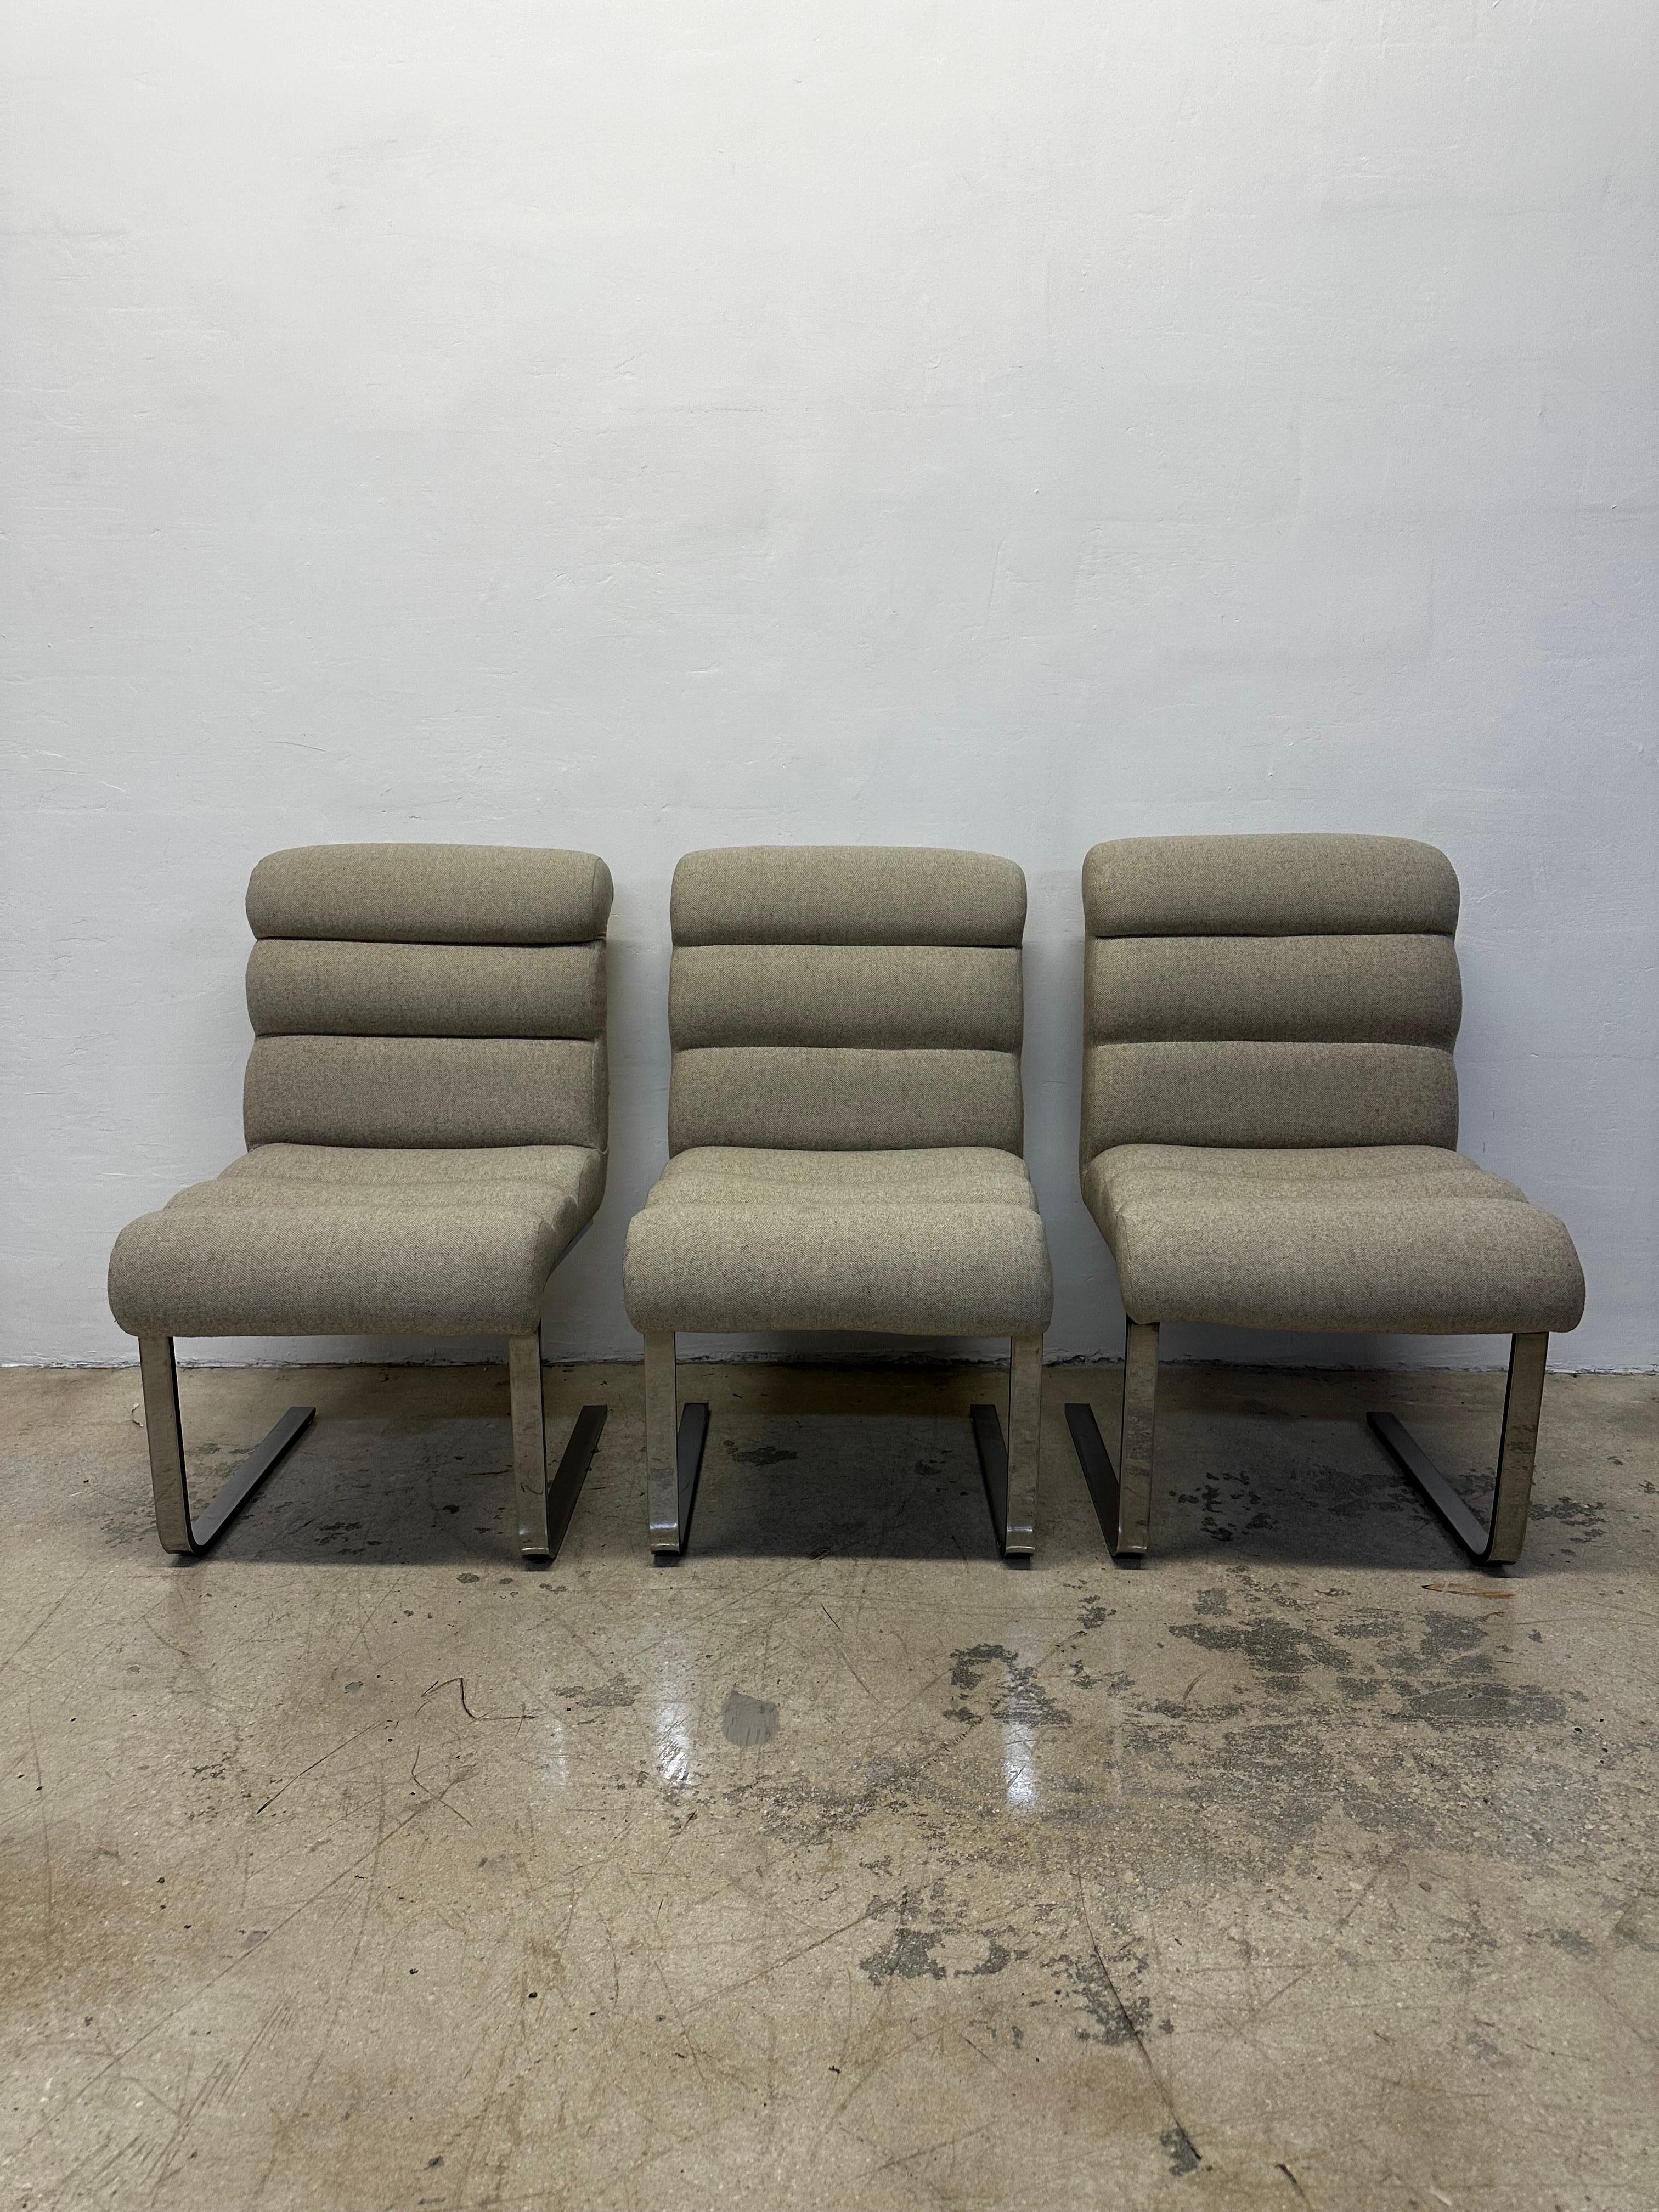 Satz von drei freitragenden Esszimmerstühlen der Collection'S mit Chromgestell und Stoffsitzen von Frank Mariani, 1970er Jahre.  Bereit für neue Polsterung.